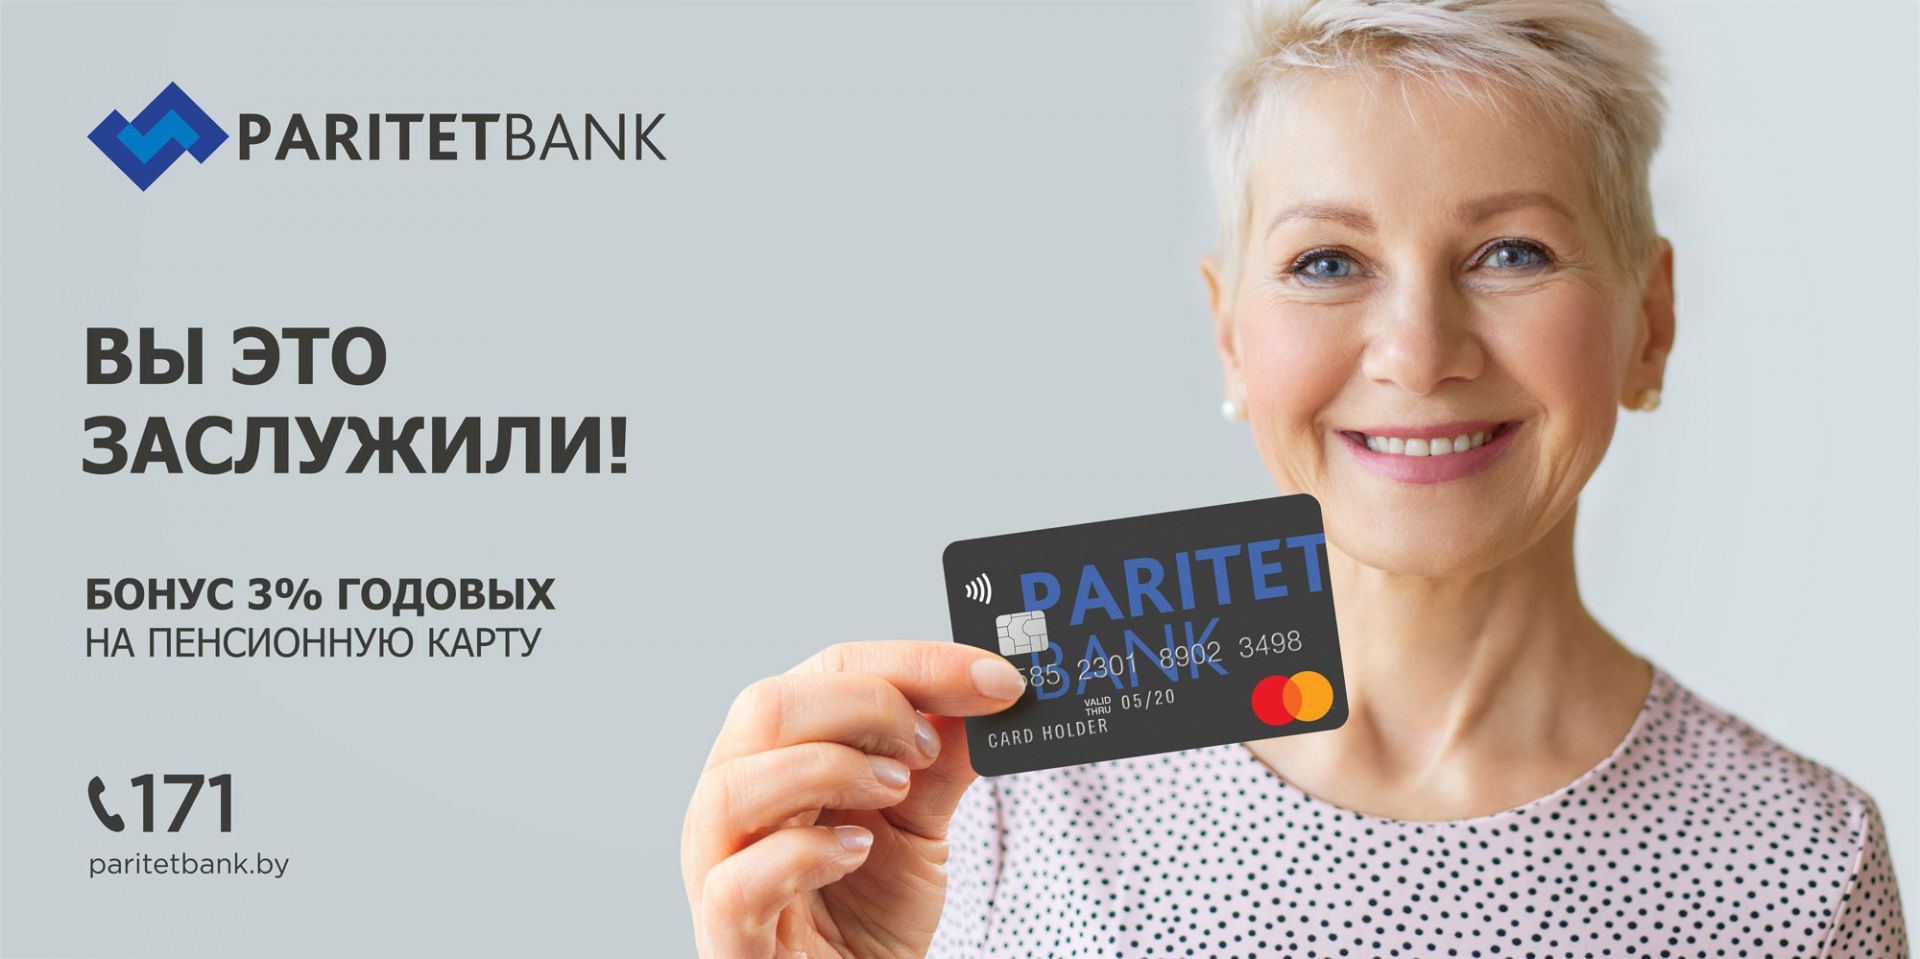 Paritetbank_KV_Zaslujili-woman_6x3.jpg